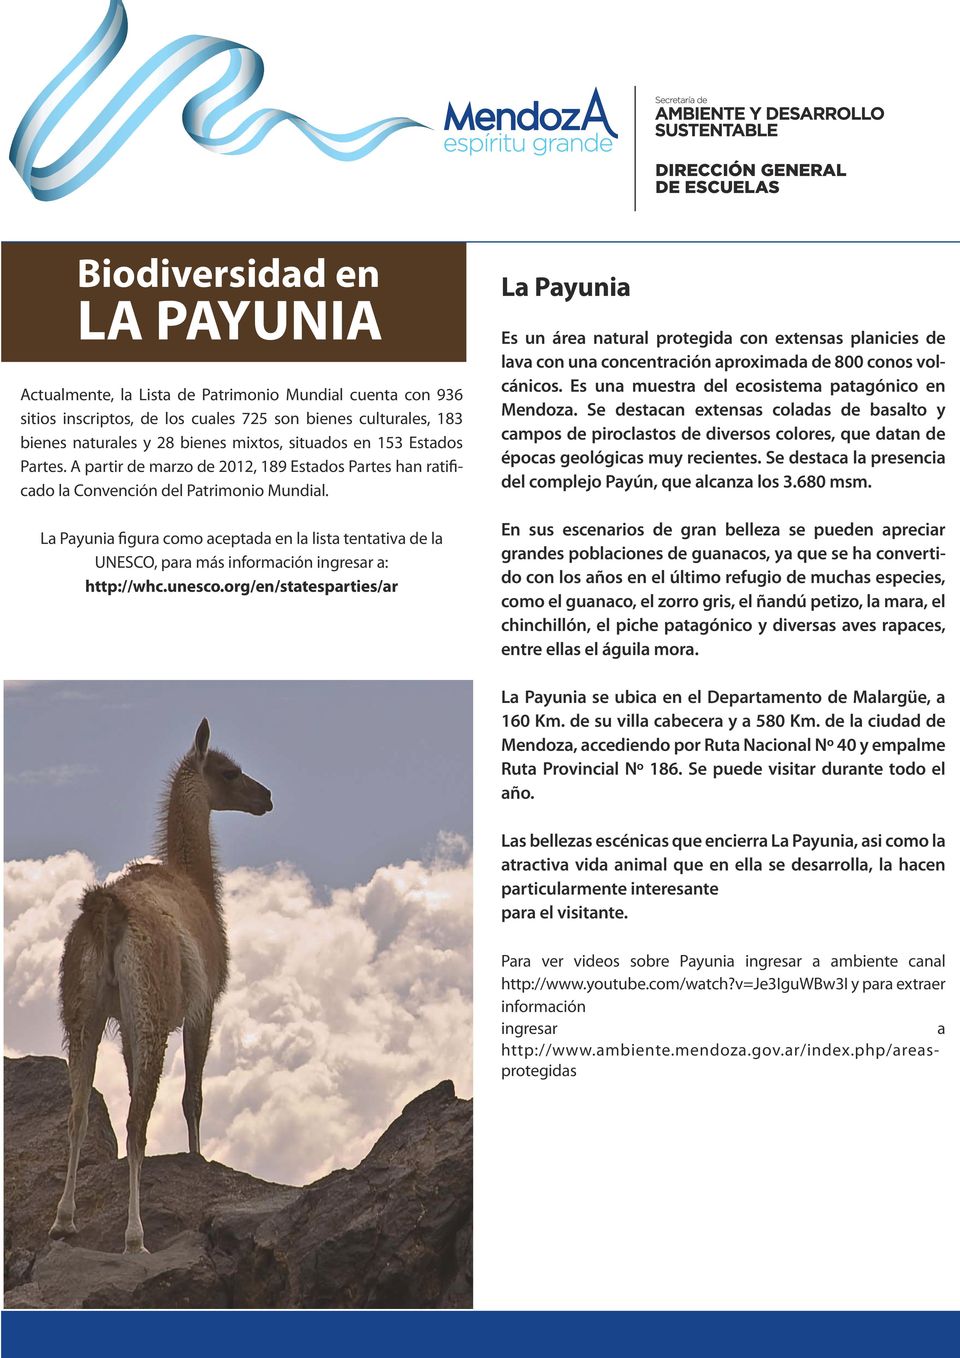 La Payunia figura como aceptada en la lista tentativa de la UNESCO, para más información ingresar a: http://whc.unesco.